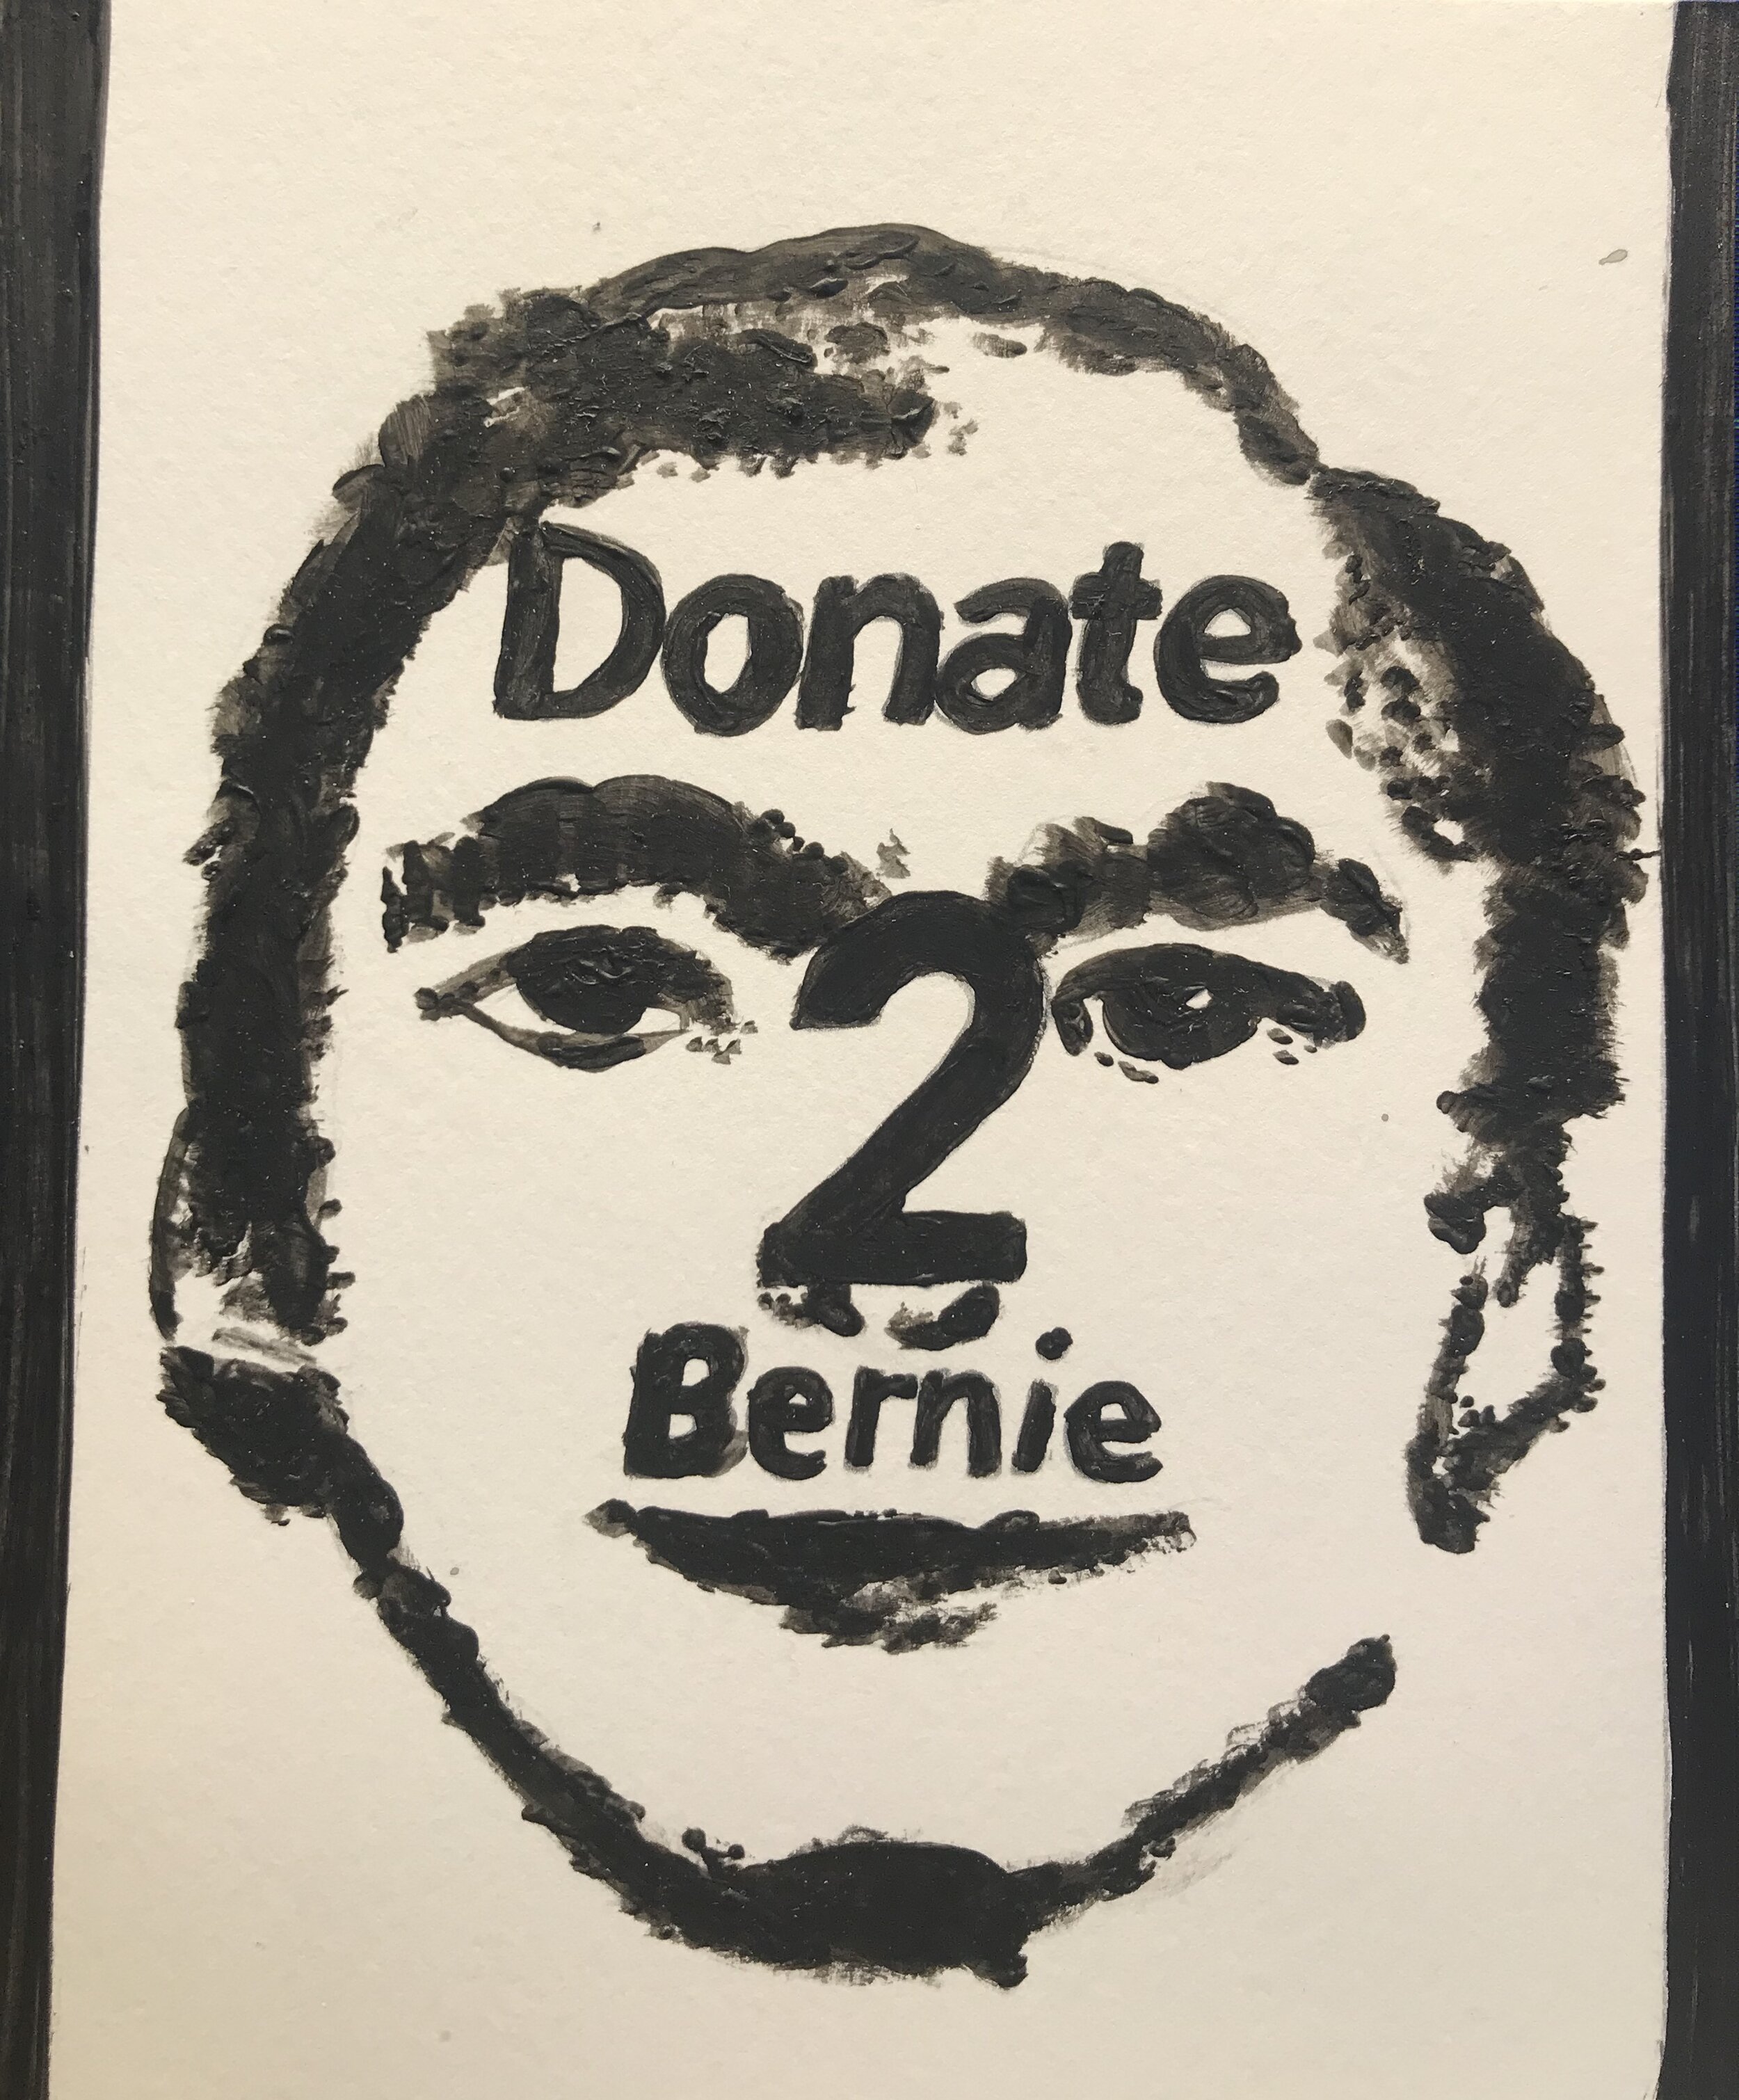 Donate 2 Bernie